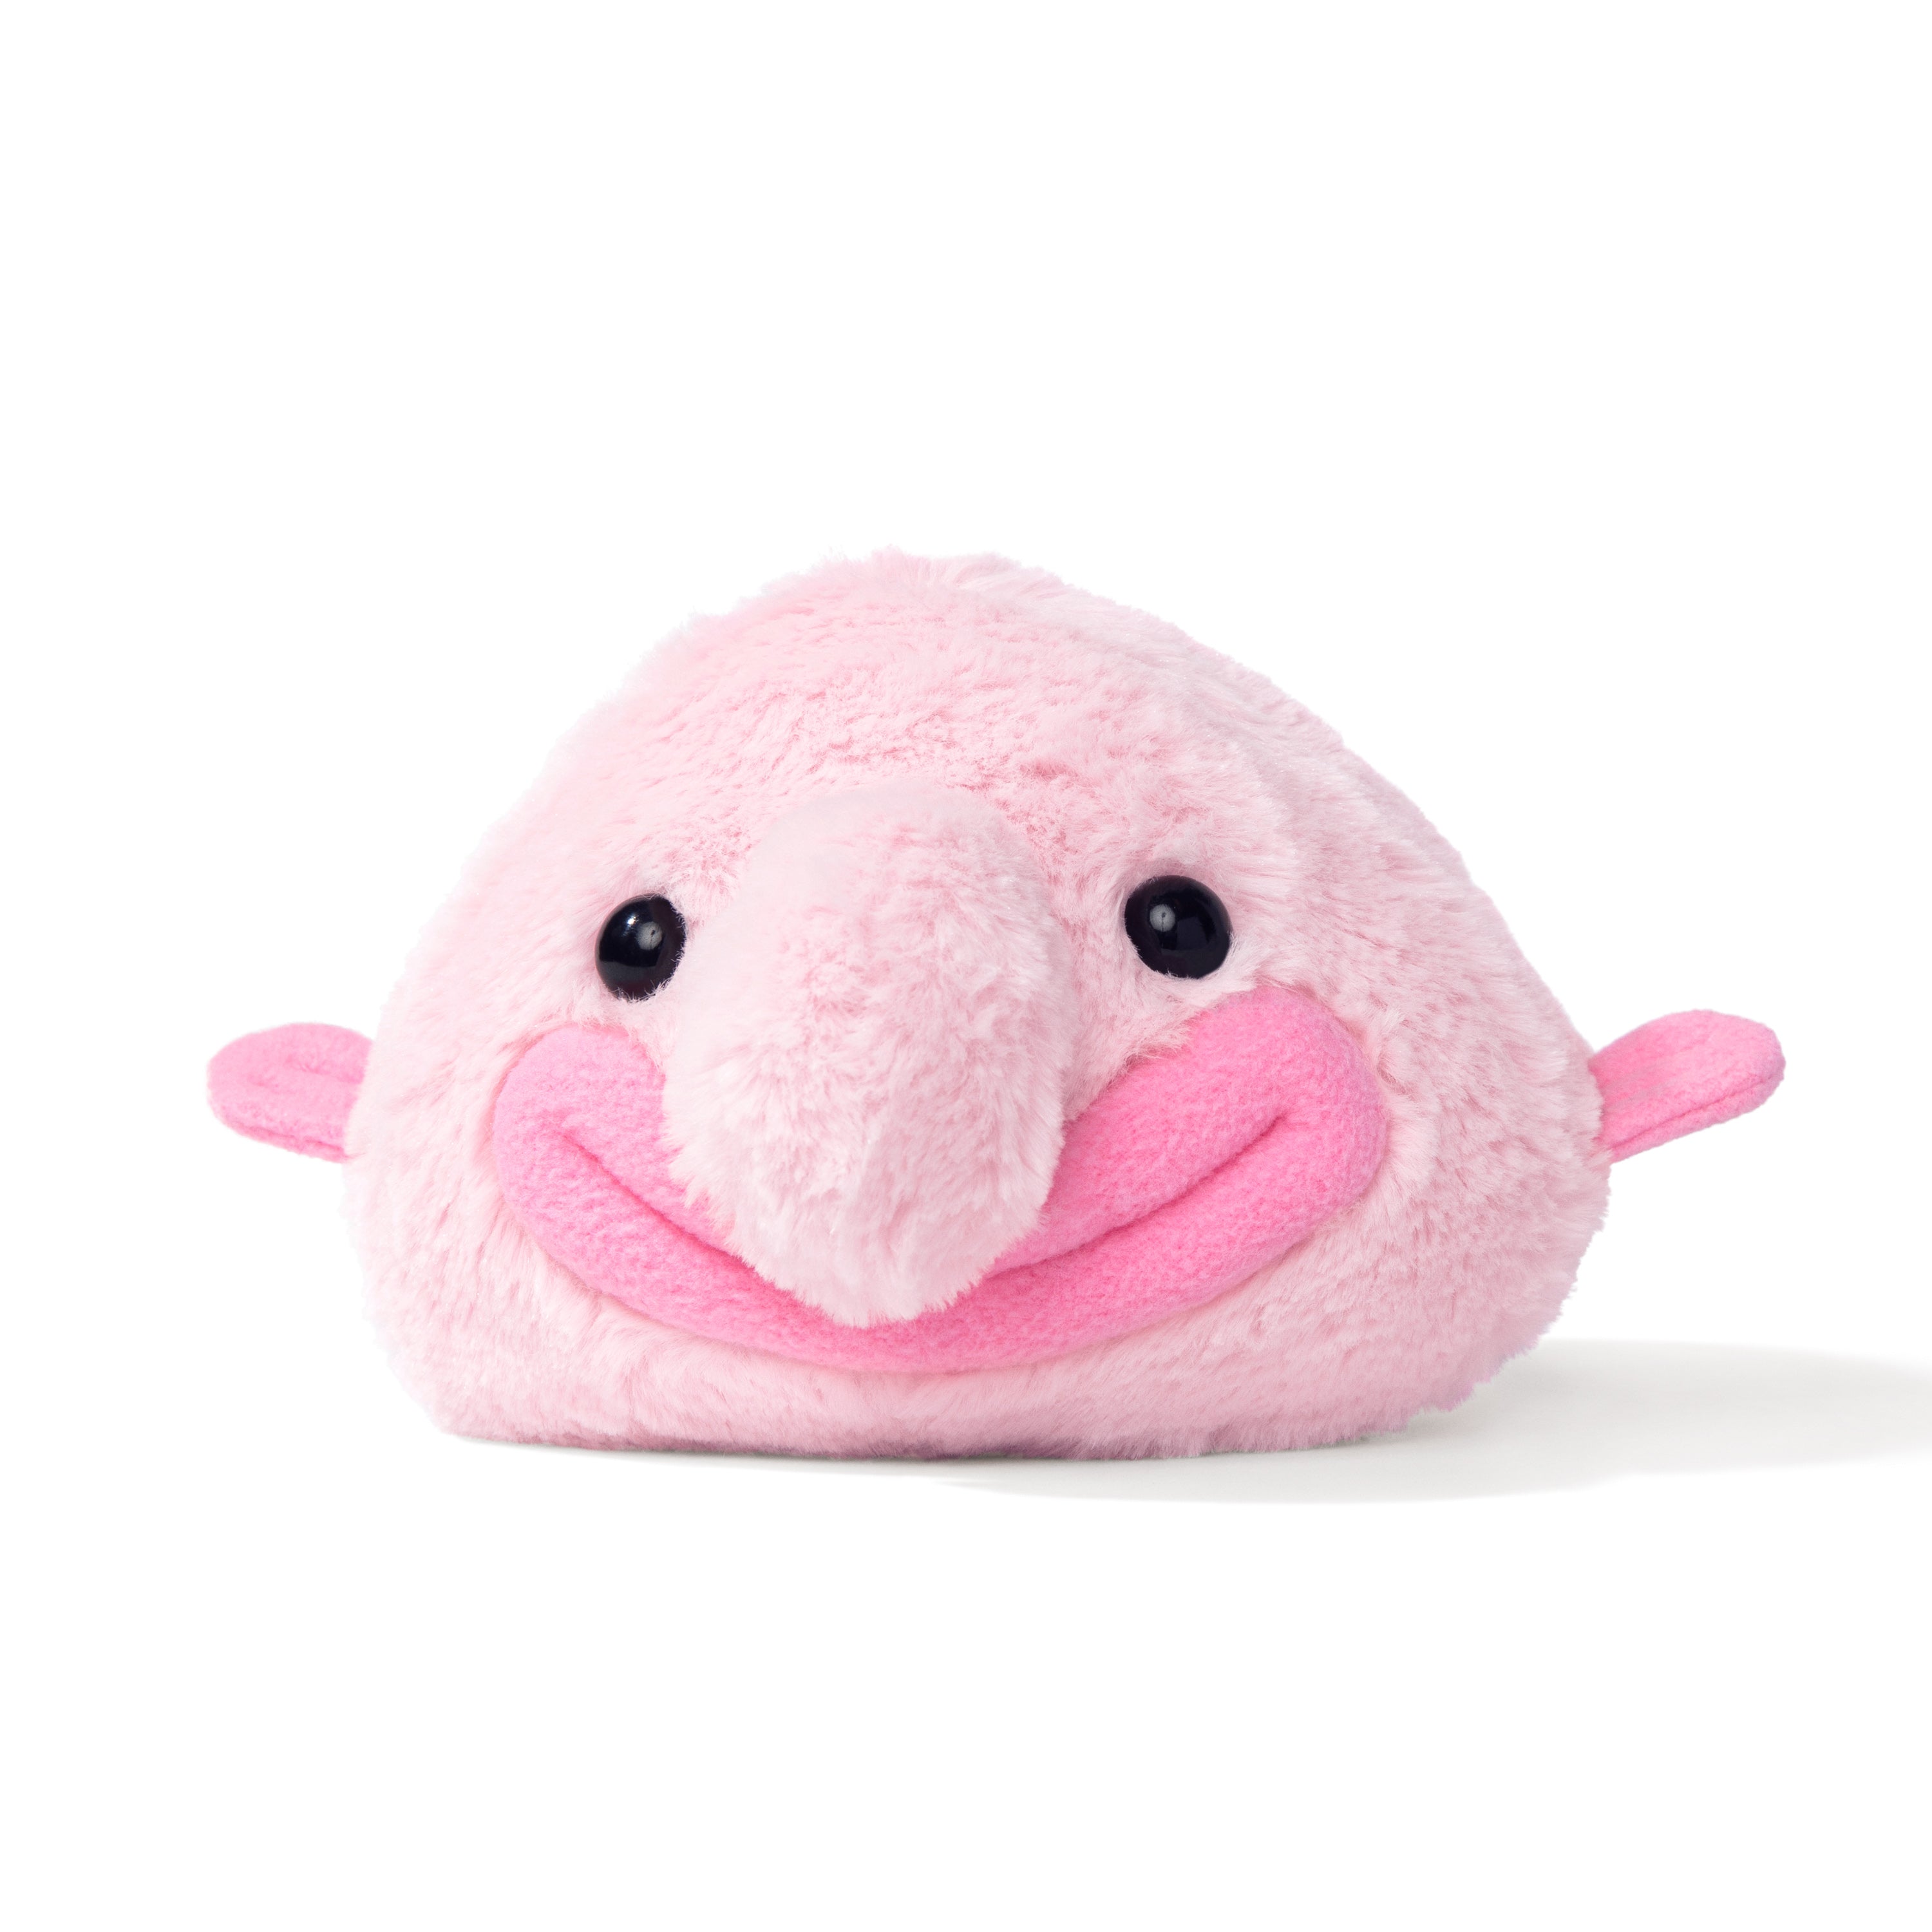  NUFR Blobfish Blob Ugly Fish Weird Stuffed Squishy